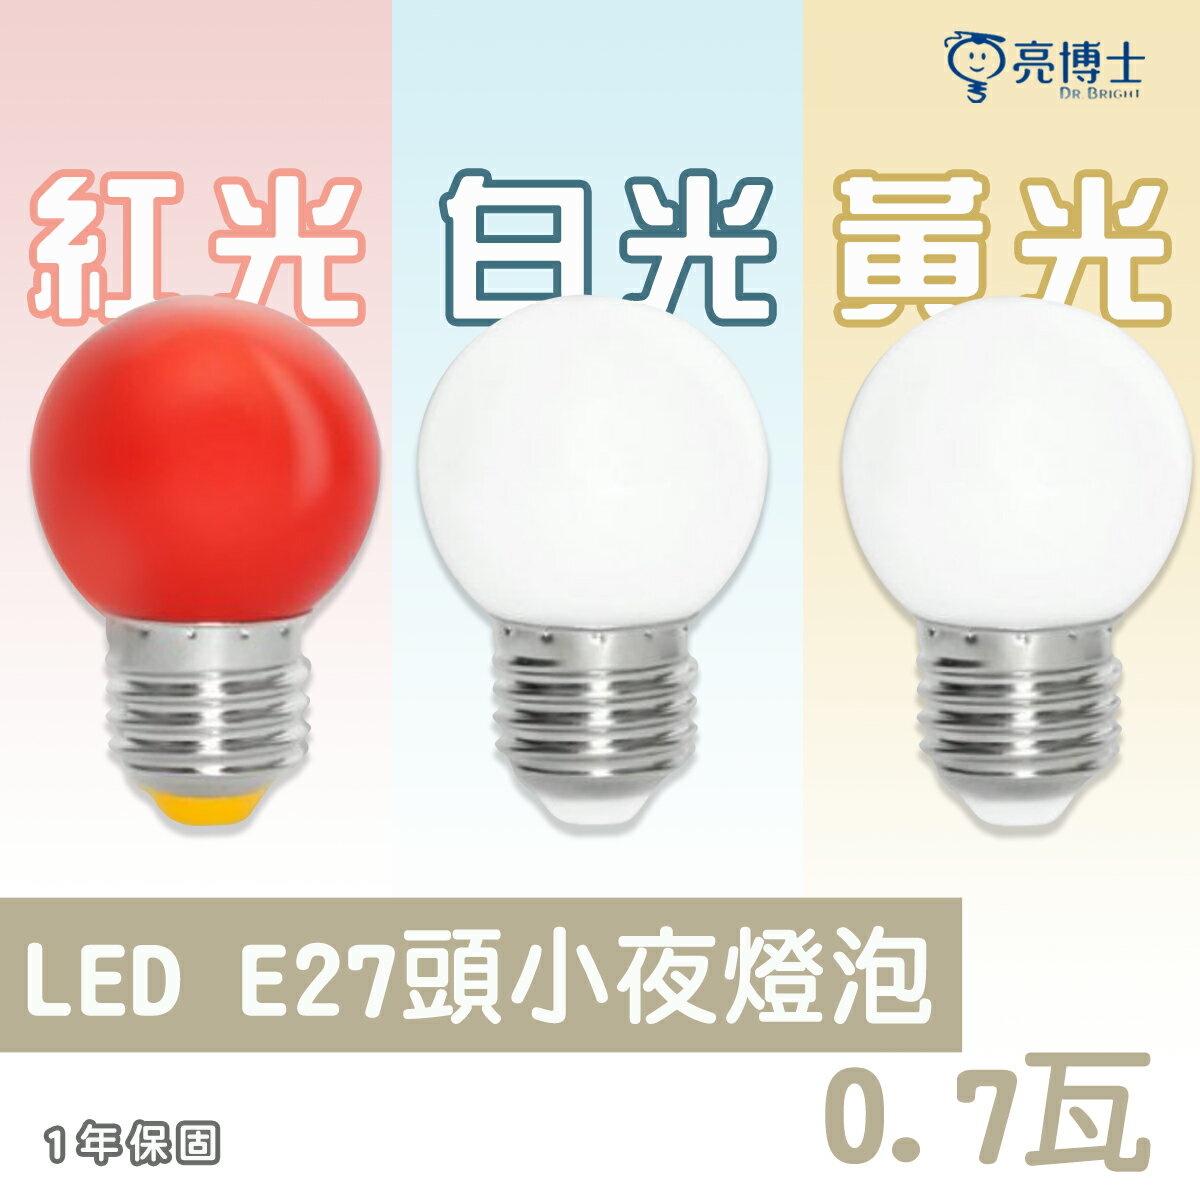 🚛亮博士 LED E27 0.7W 燈泡 紅 / 黃 / 白光 小夜燈 取代市售鹵素燈 神明燈DR-REC-G450.7W